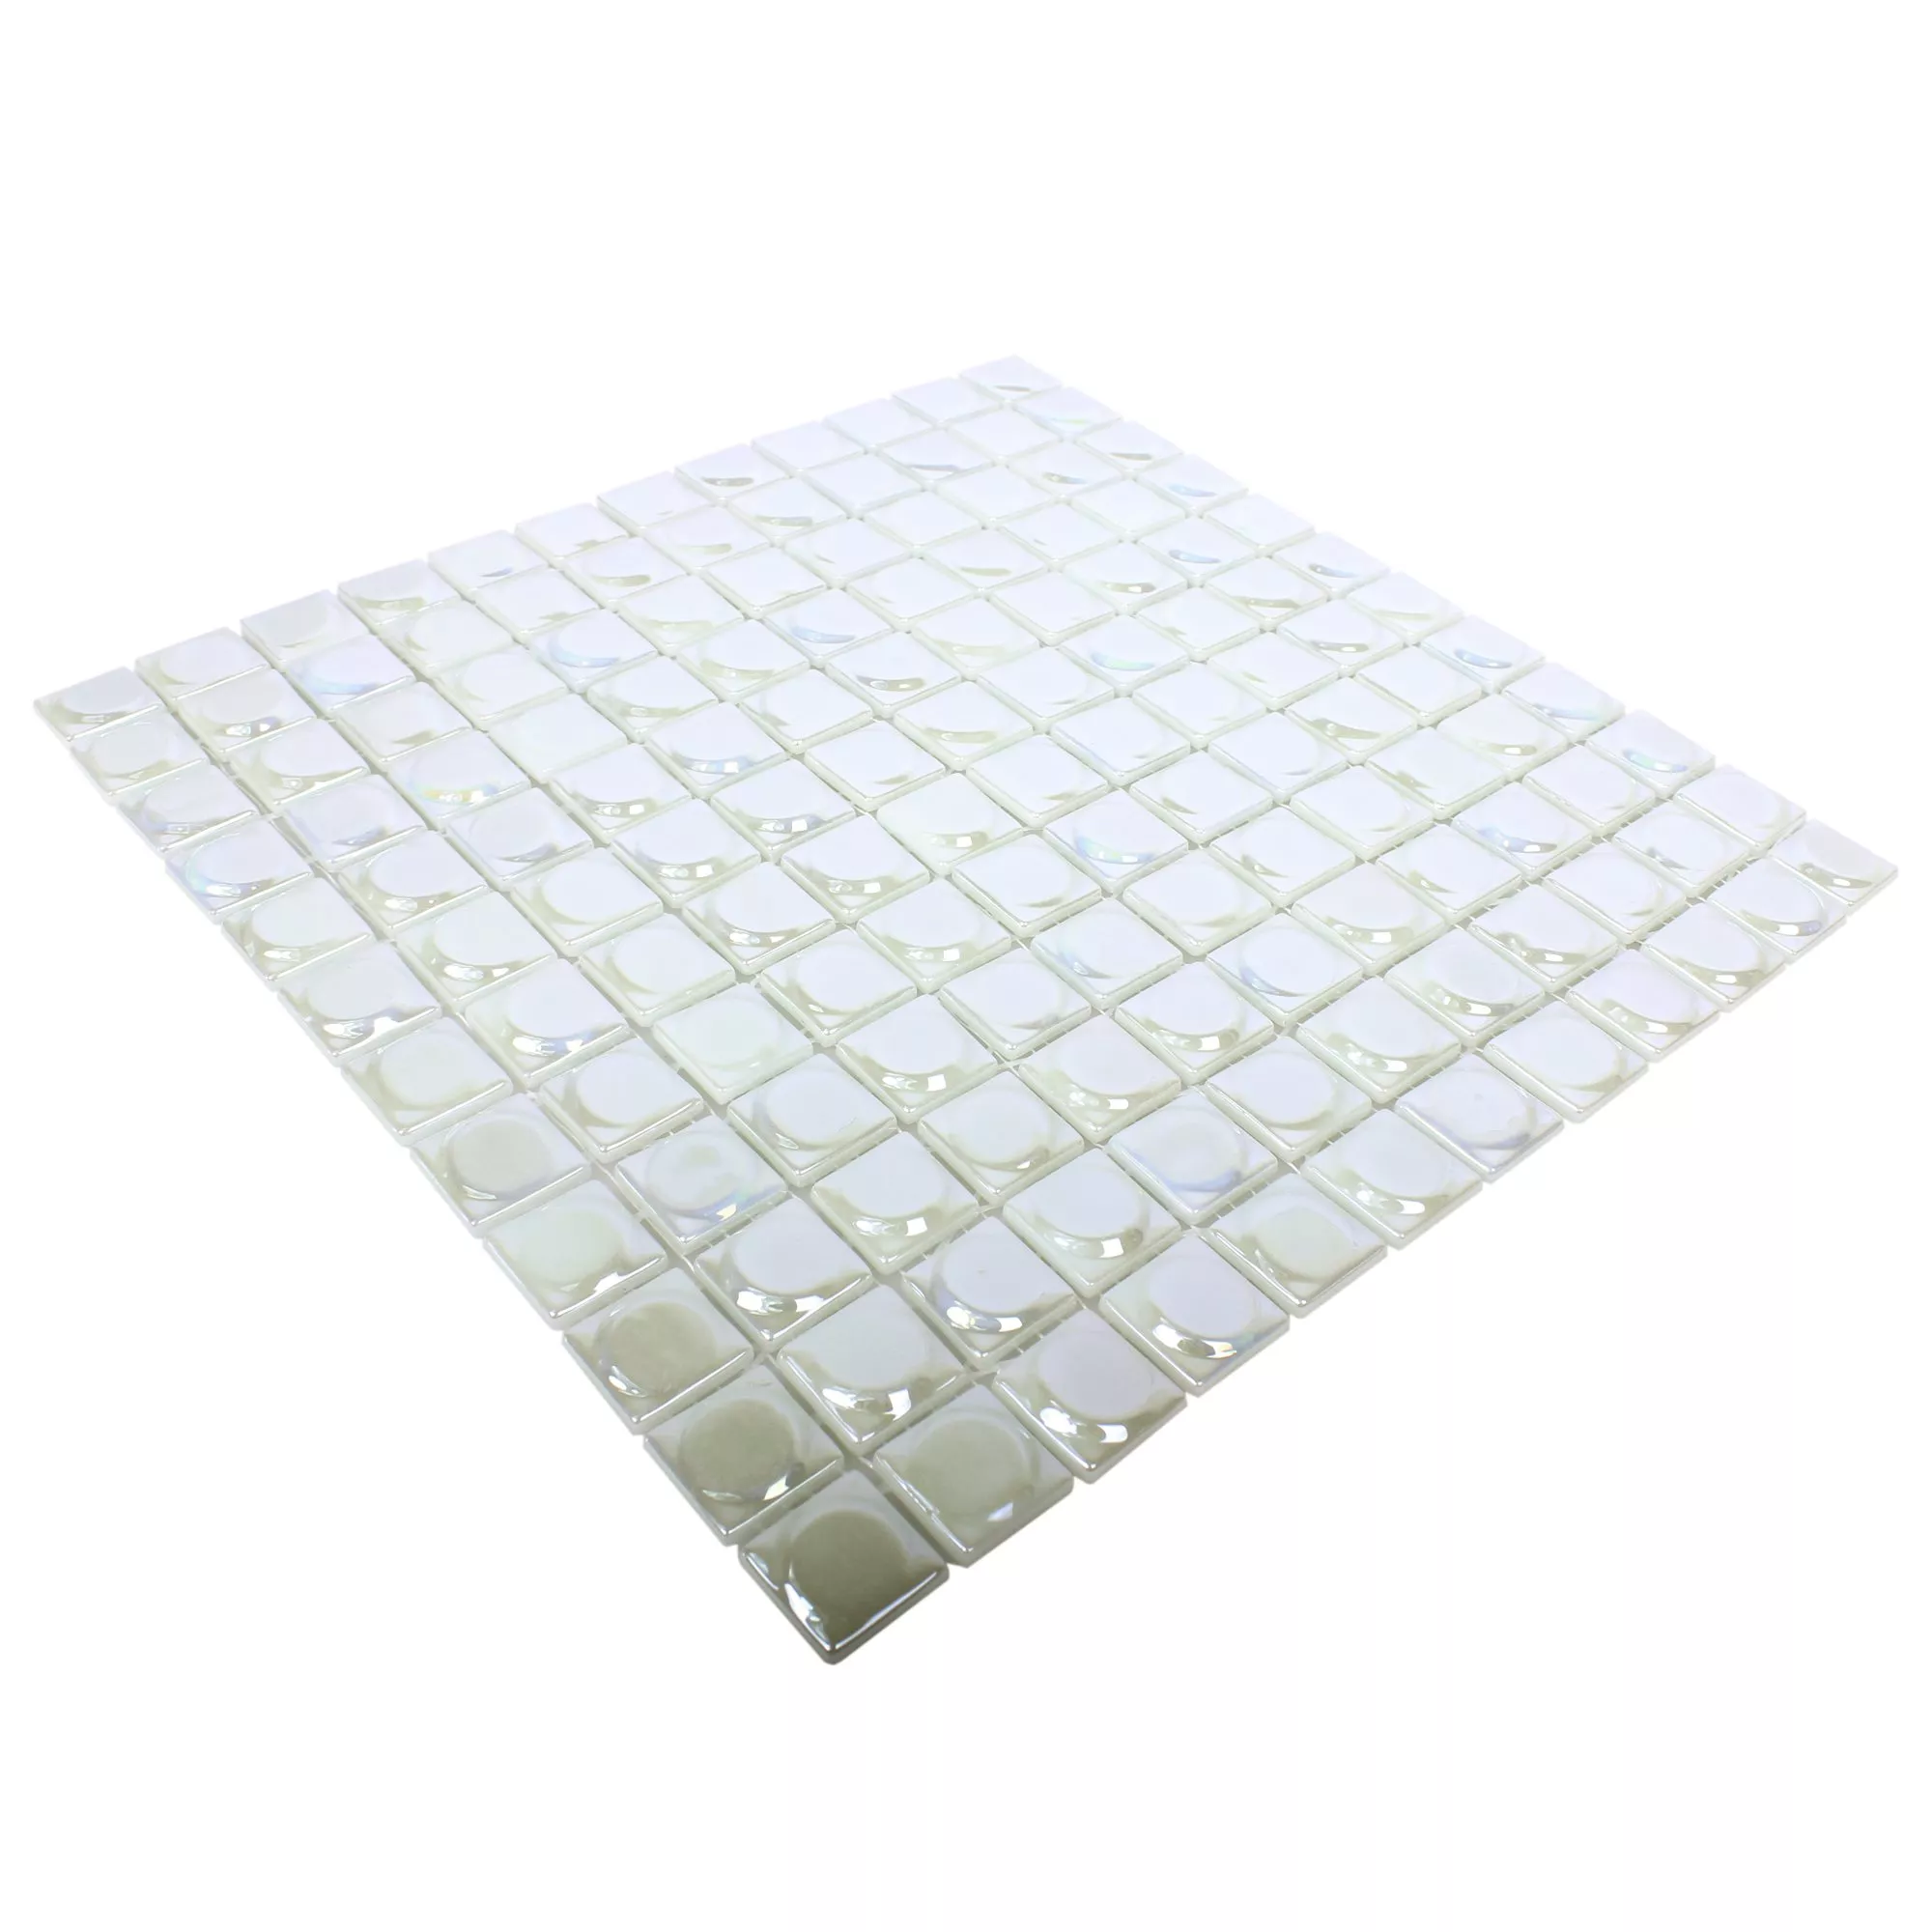 Skleněná Mozaika Dlaždice Accra Bílá 3D Zaoblený